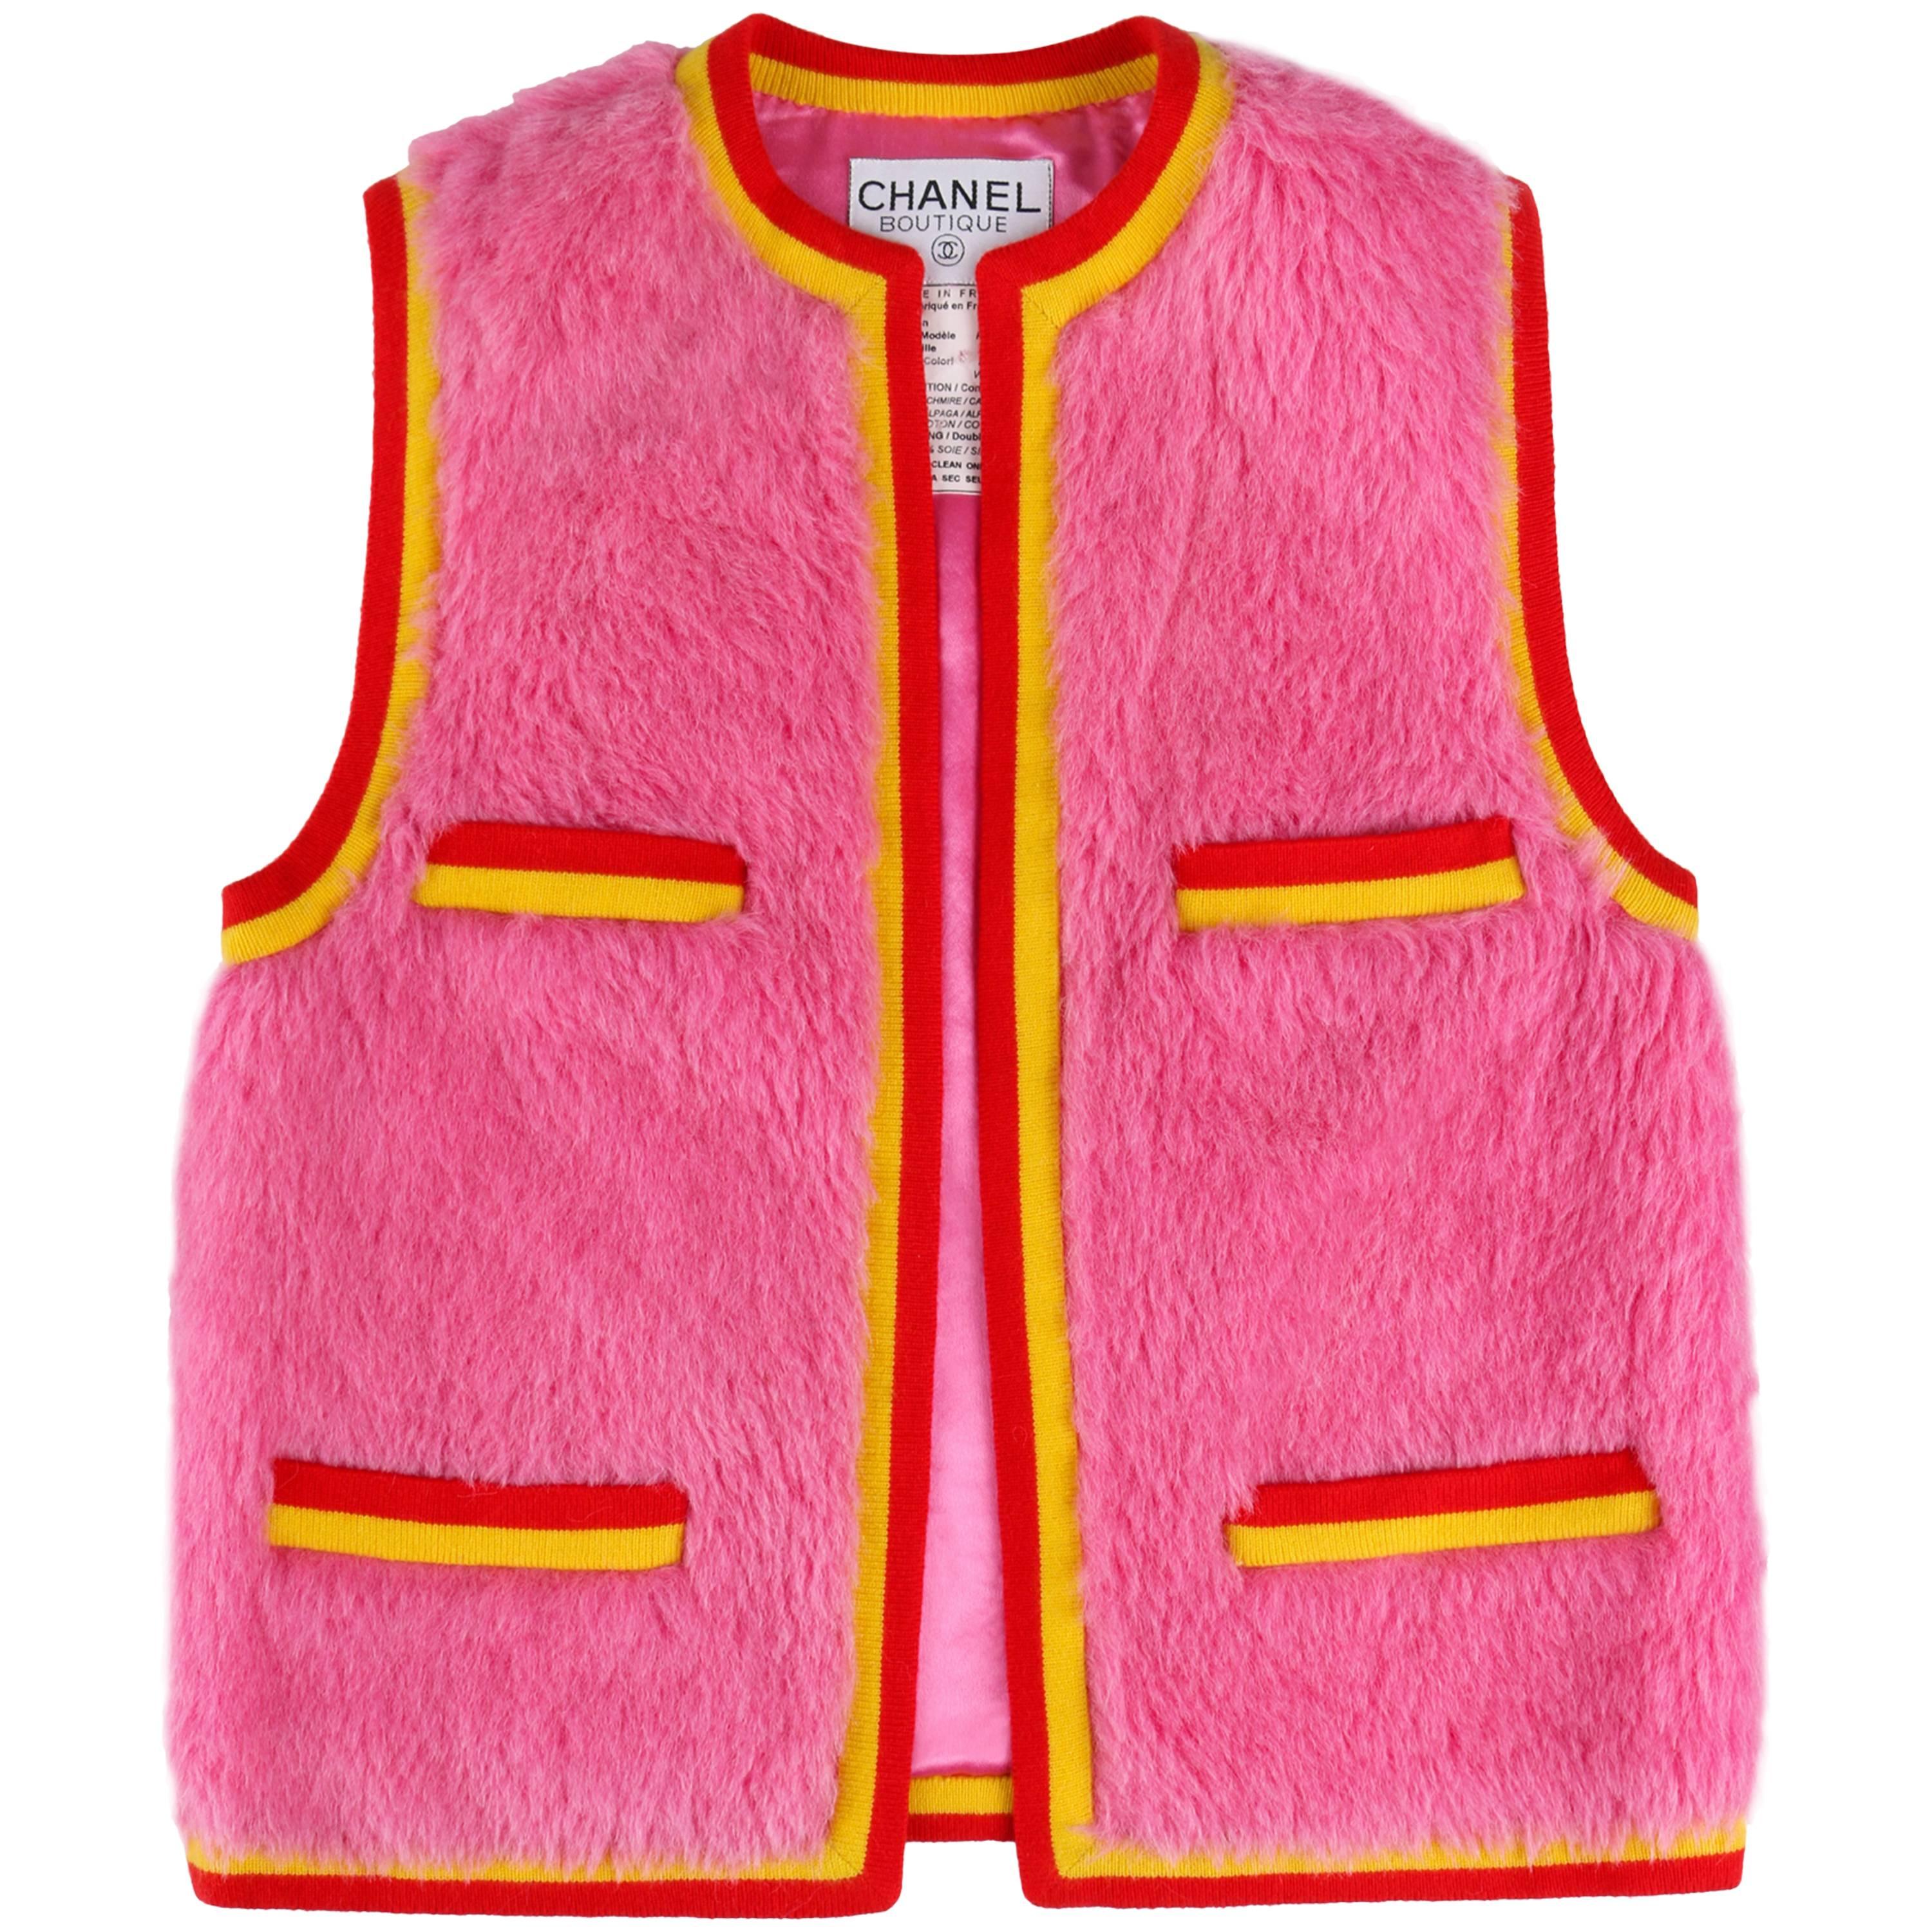 CHANEL 1994 A/W Bubble Gum Pink Alpaca Cashmere Vest Signature CC Logo Size 34 